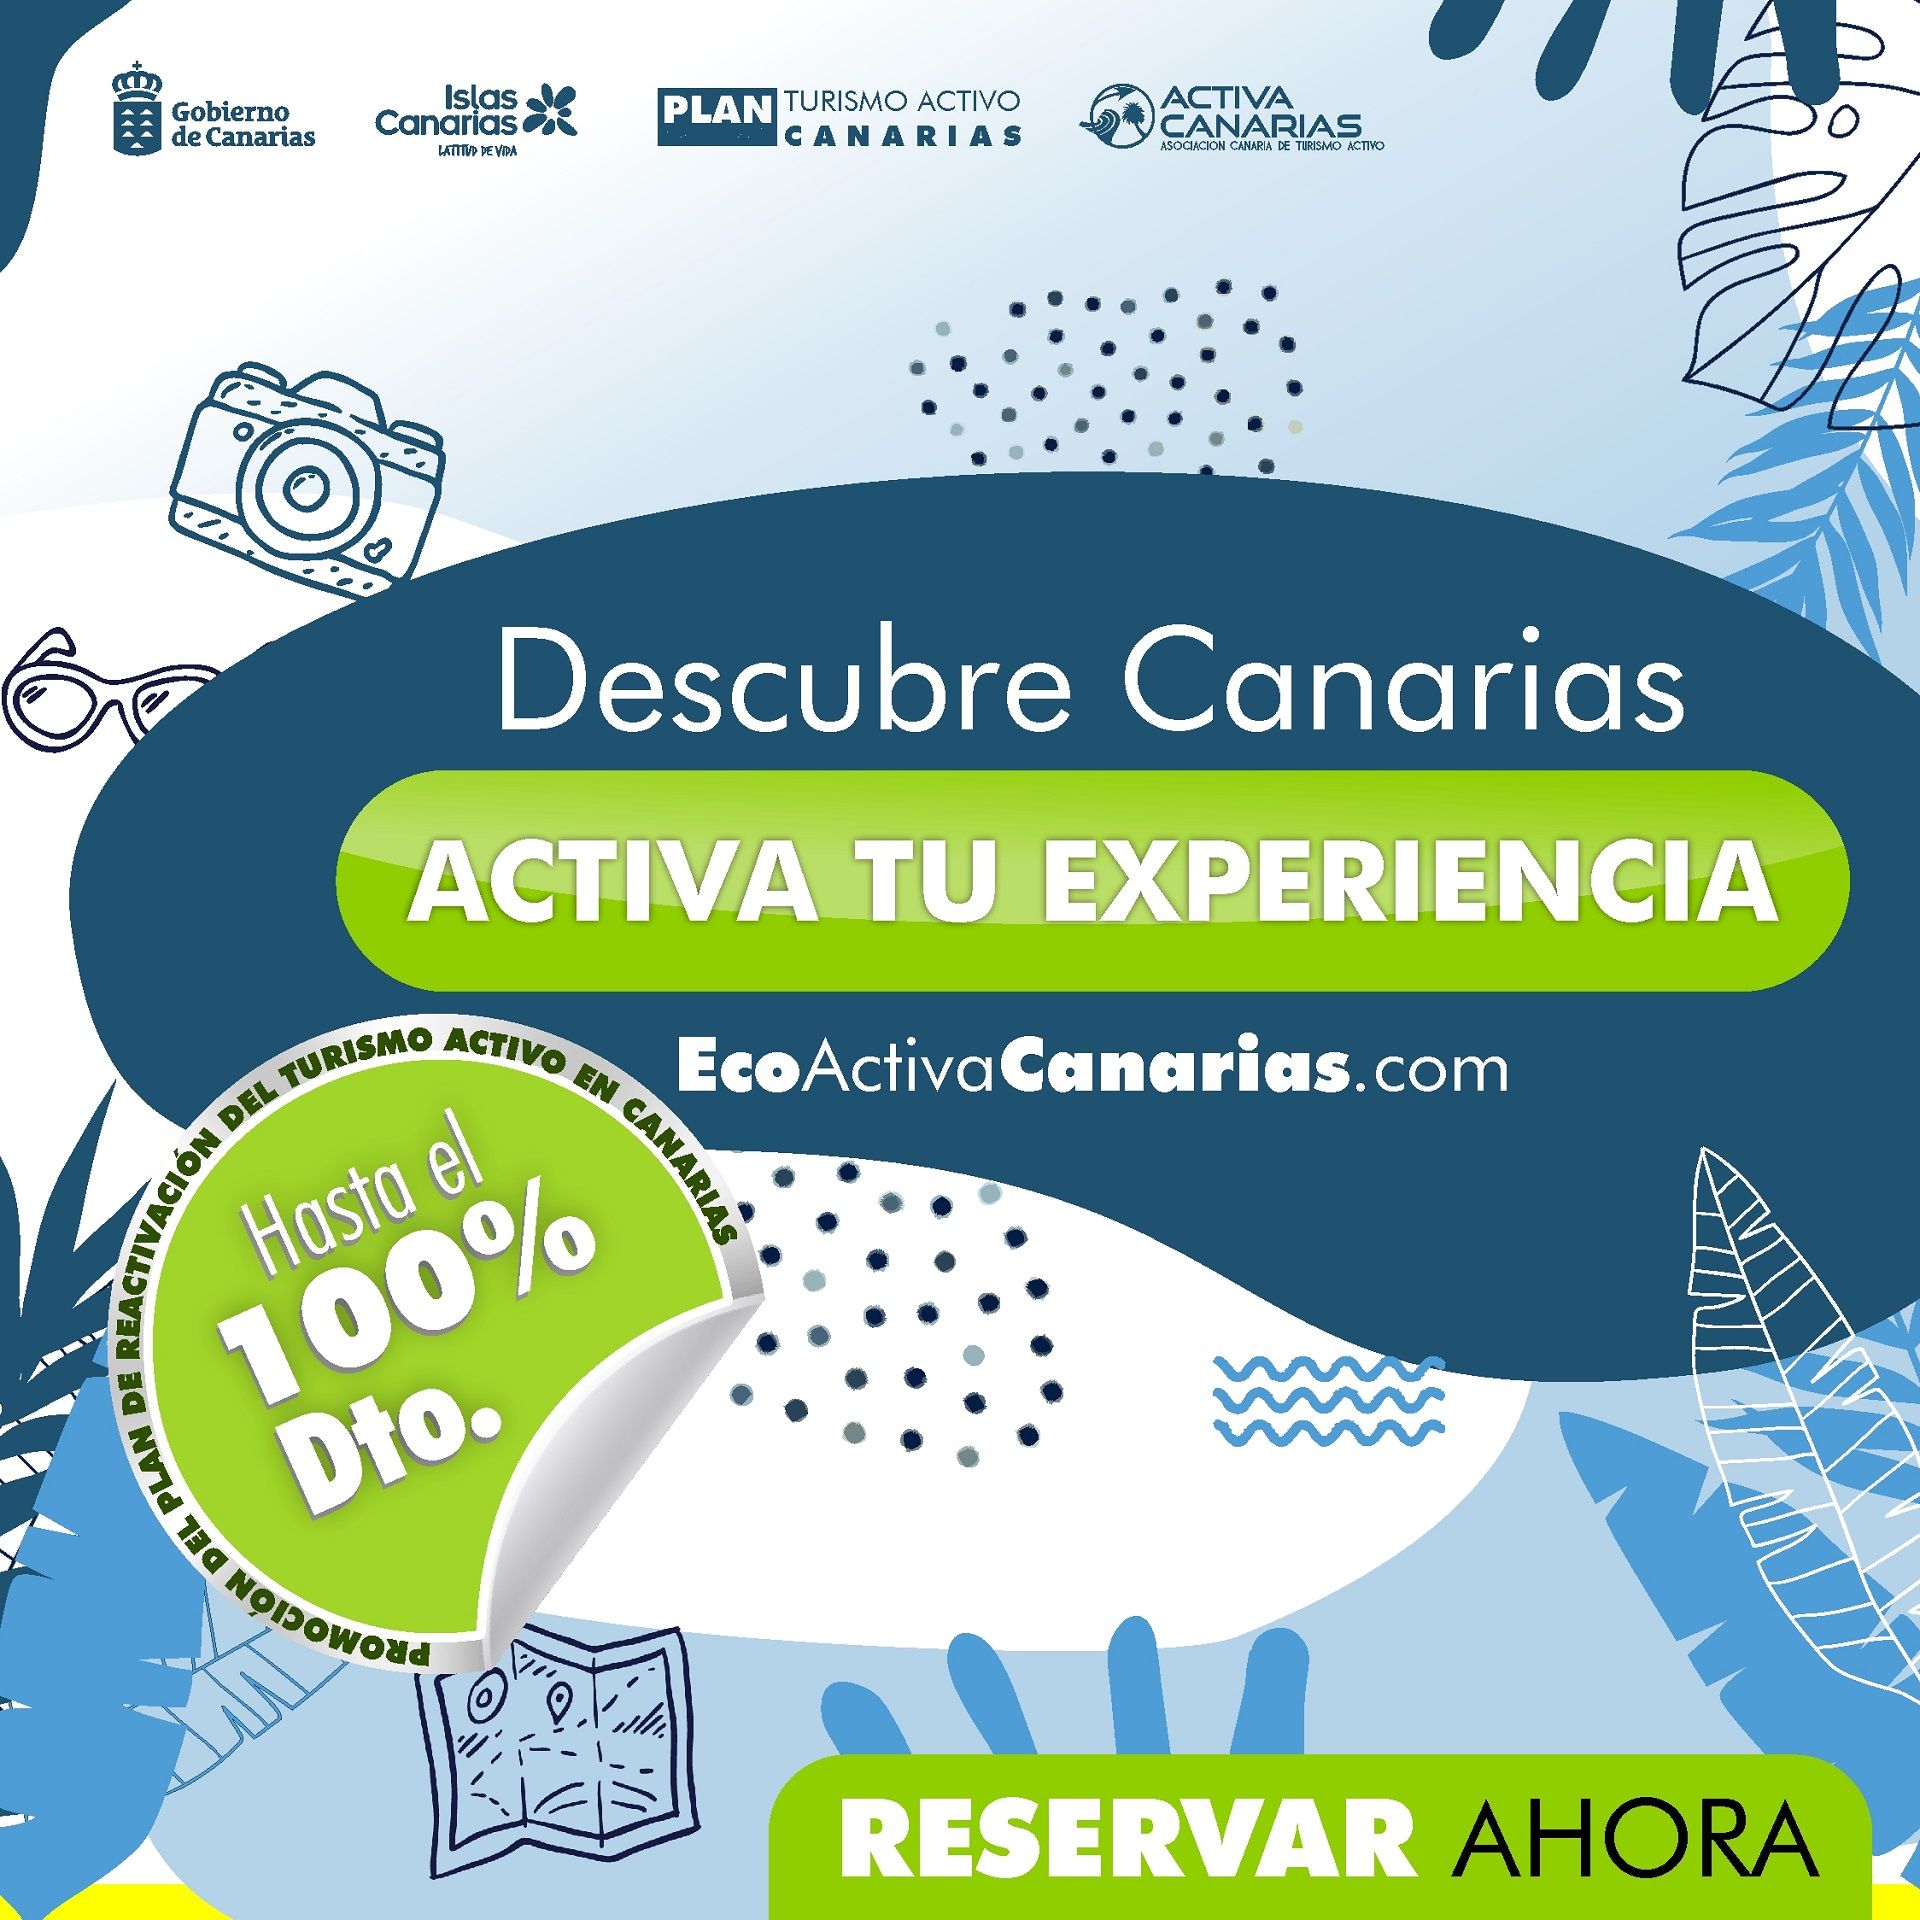 Activa Canarias y Gobierno de Canarias invitan a descubrir Canarias